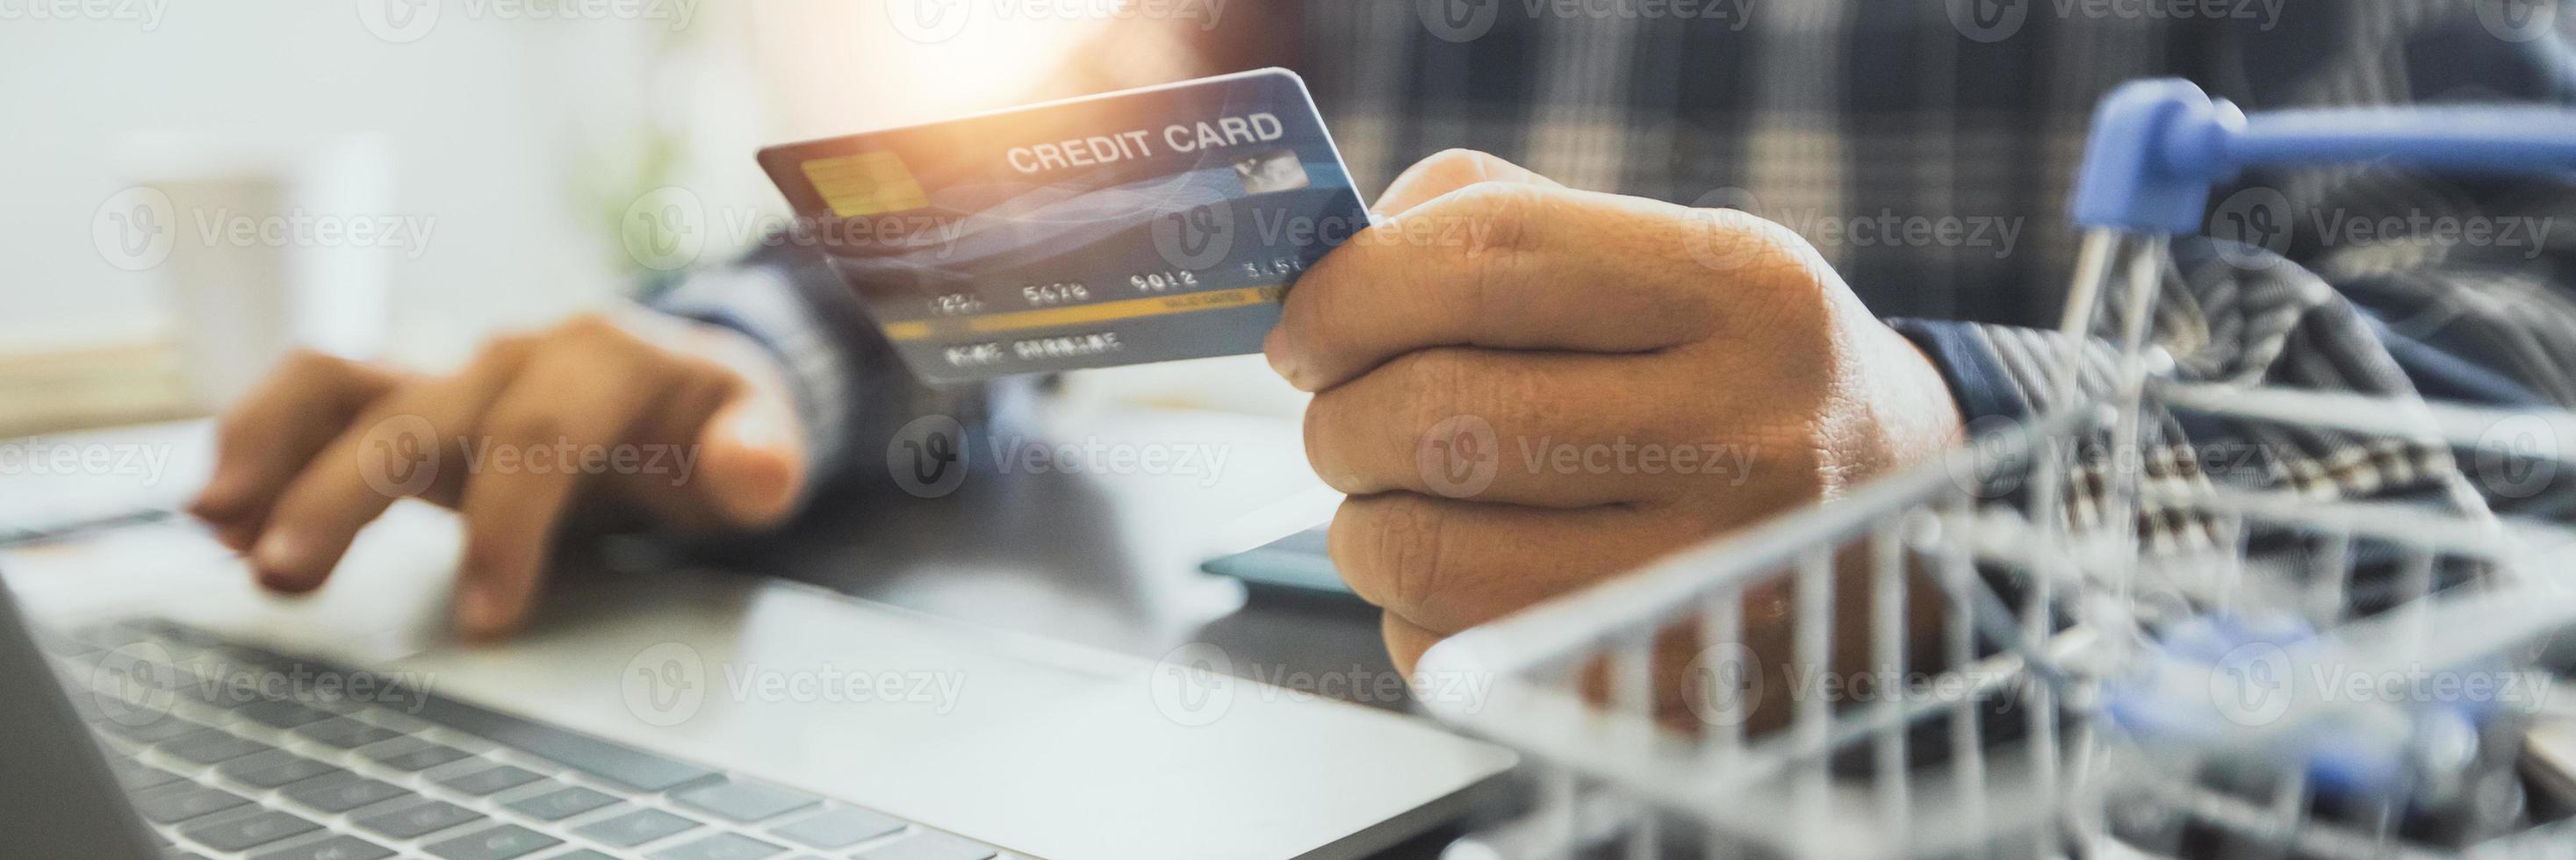 Mann hält Kreditkarte und arbeitet an einem Laptop foto